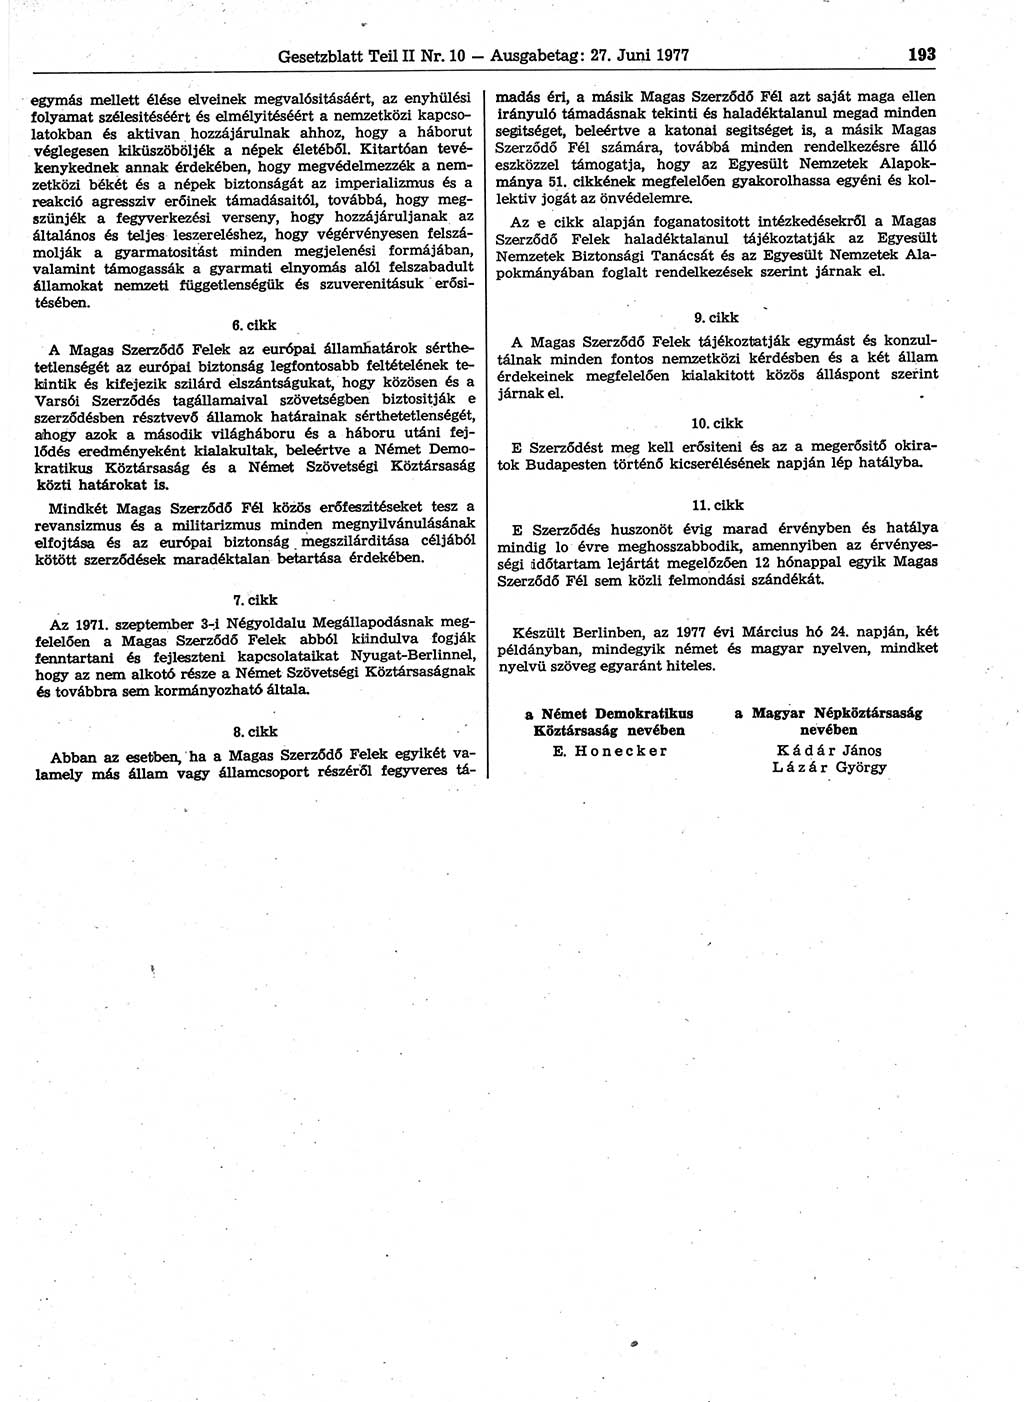 Gesetzblatt (GBl.) der Deutschen Demokratischen Republik (DDR) Teil ⅠⅠ 1977, Seite 193 (GBl. DDR ⅠⅠ 1977, S. 193)